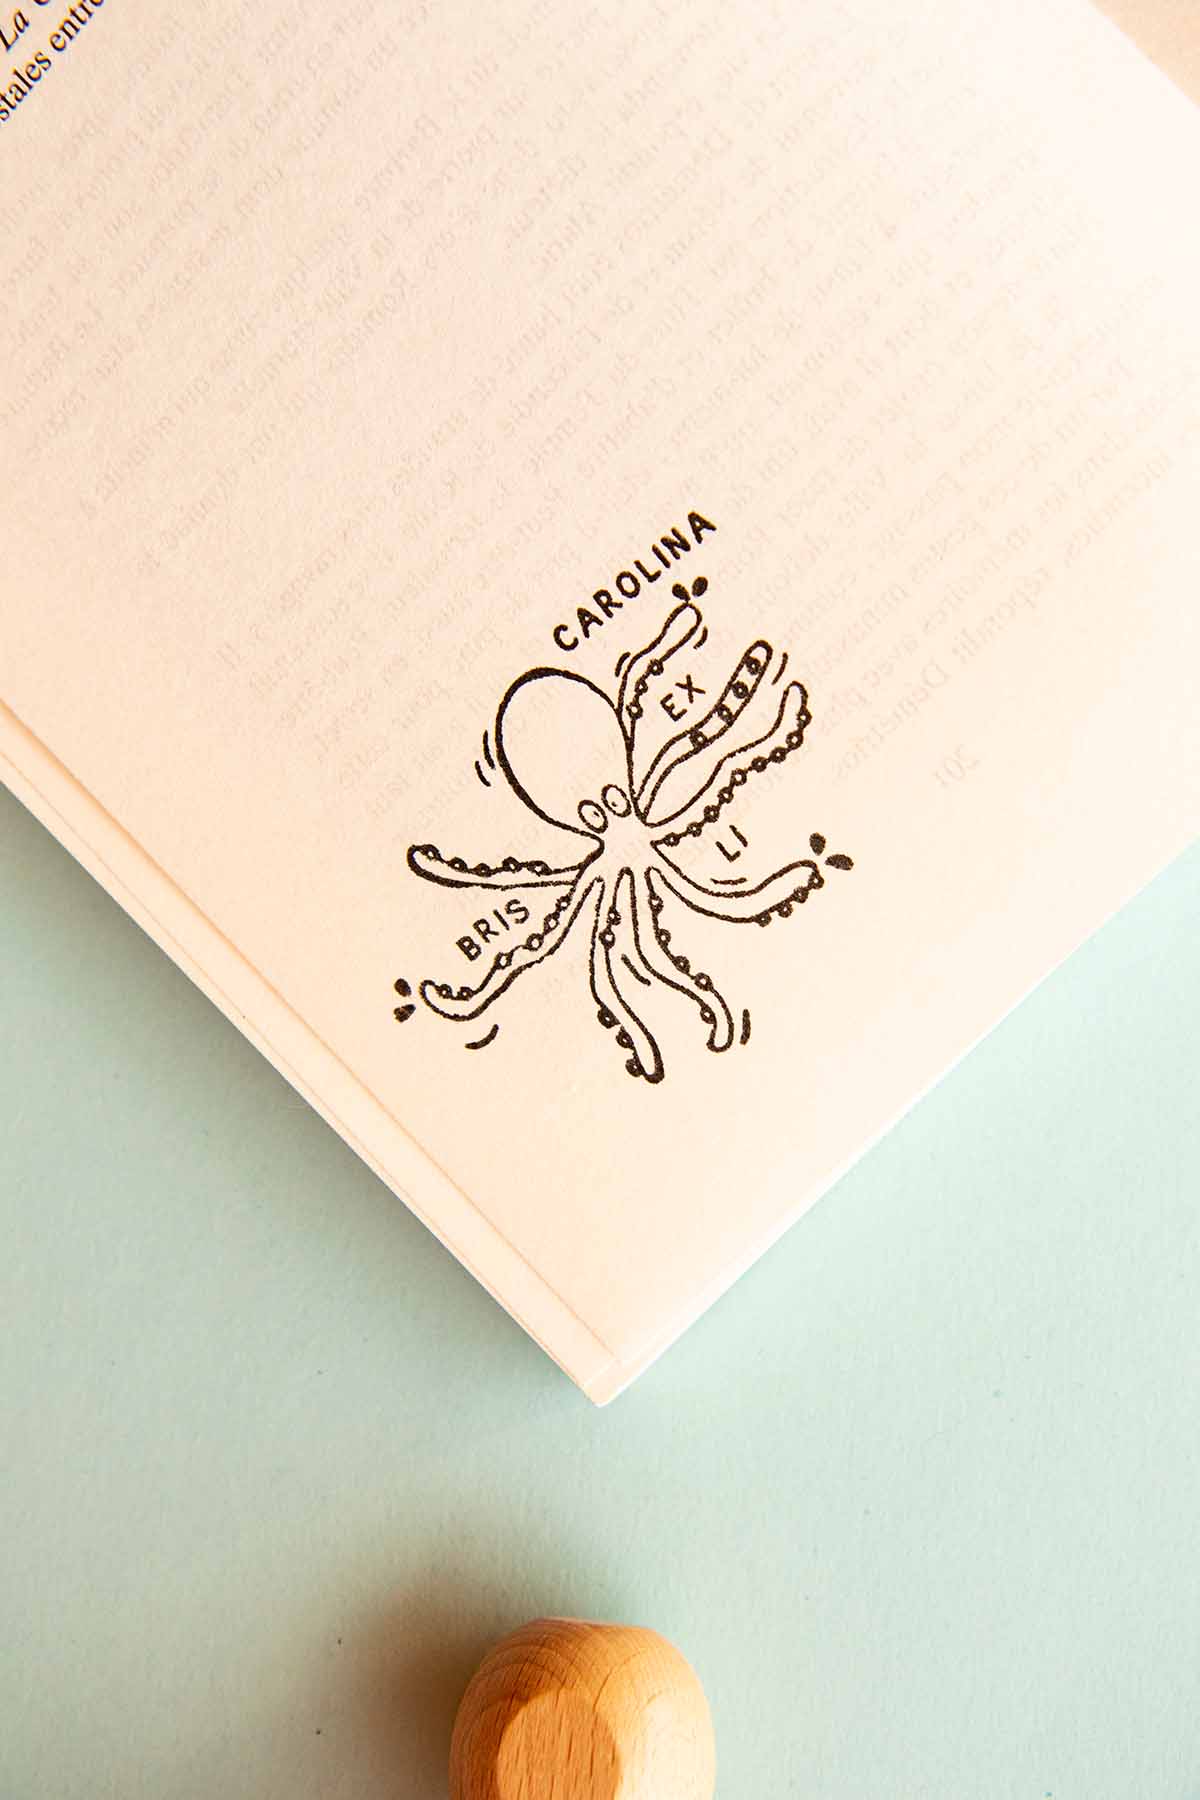 Página de libro estampada con un sello exlibris de un pulpo